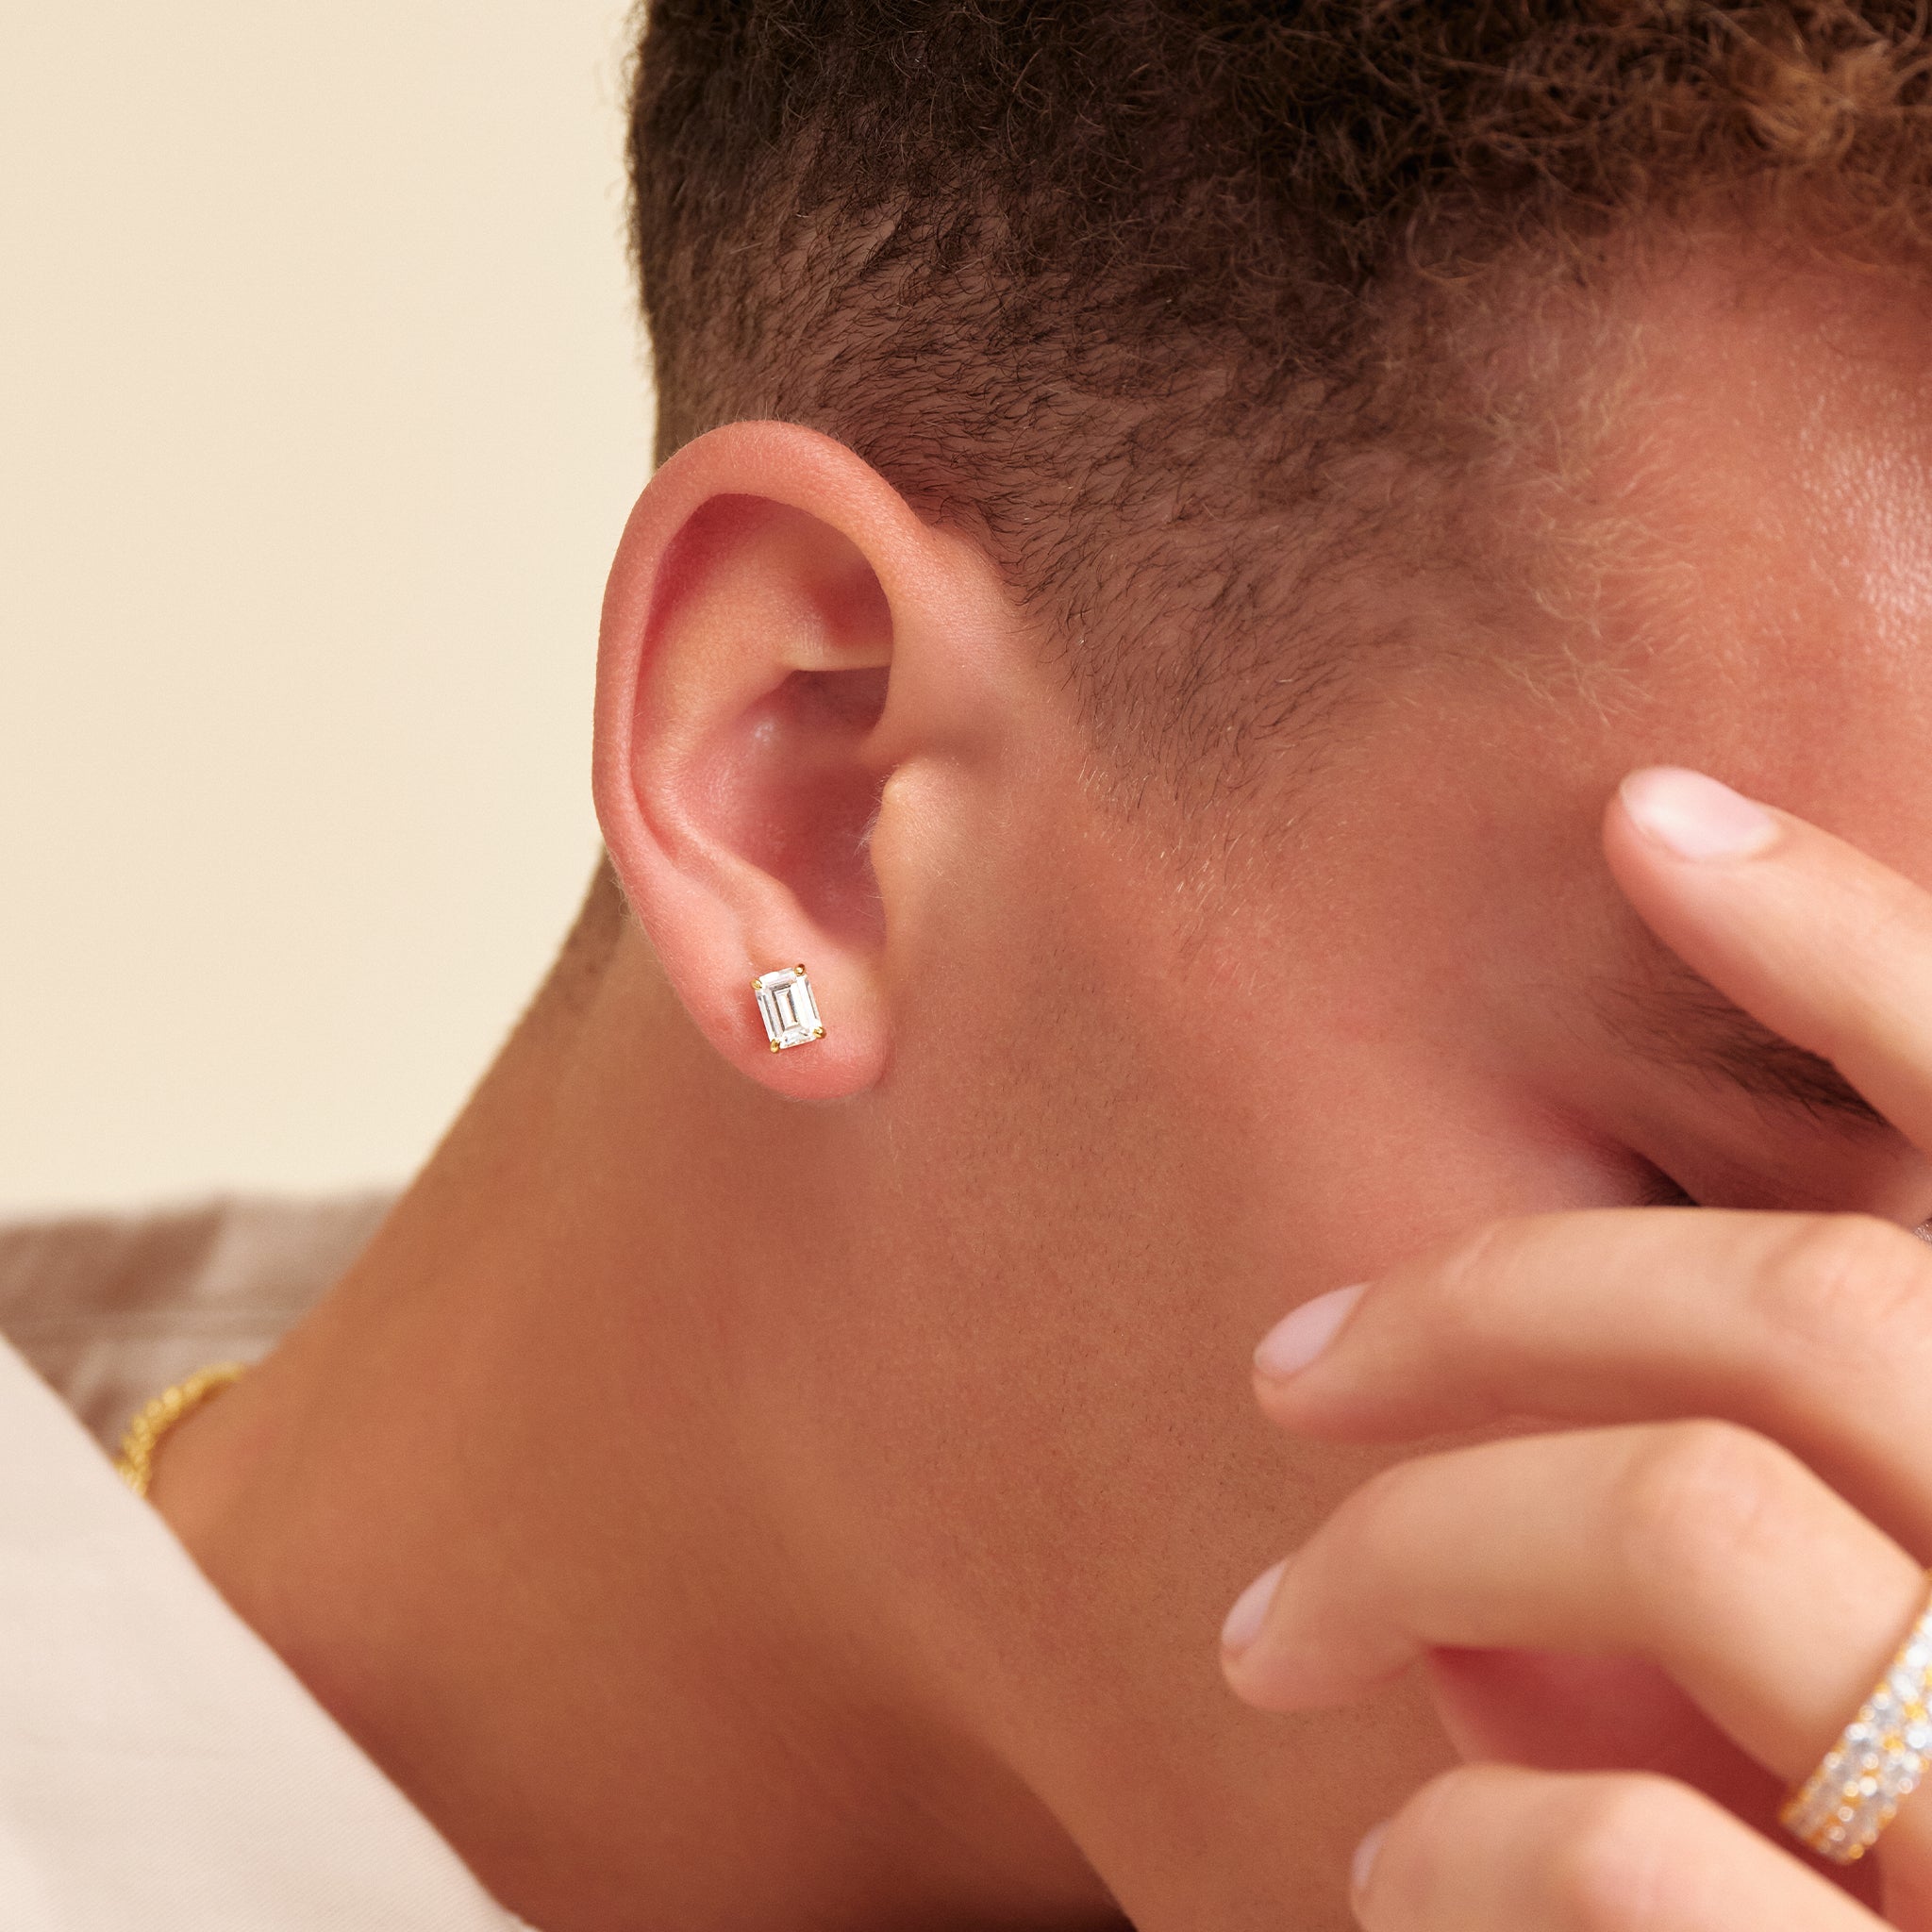 Men's Diamond Earrings Guide | The Diamond Store